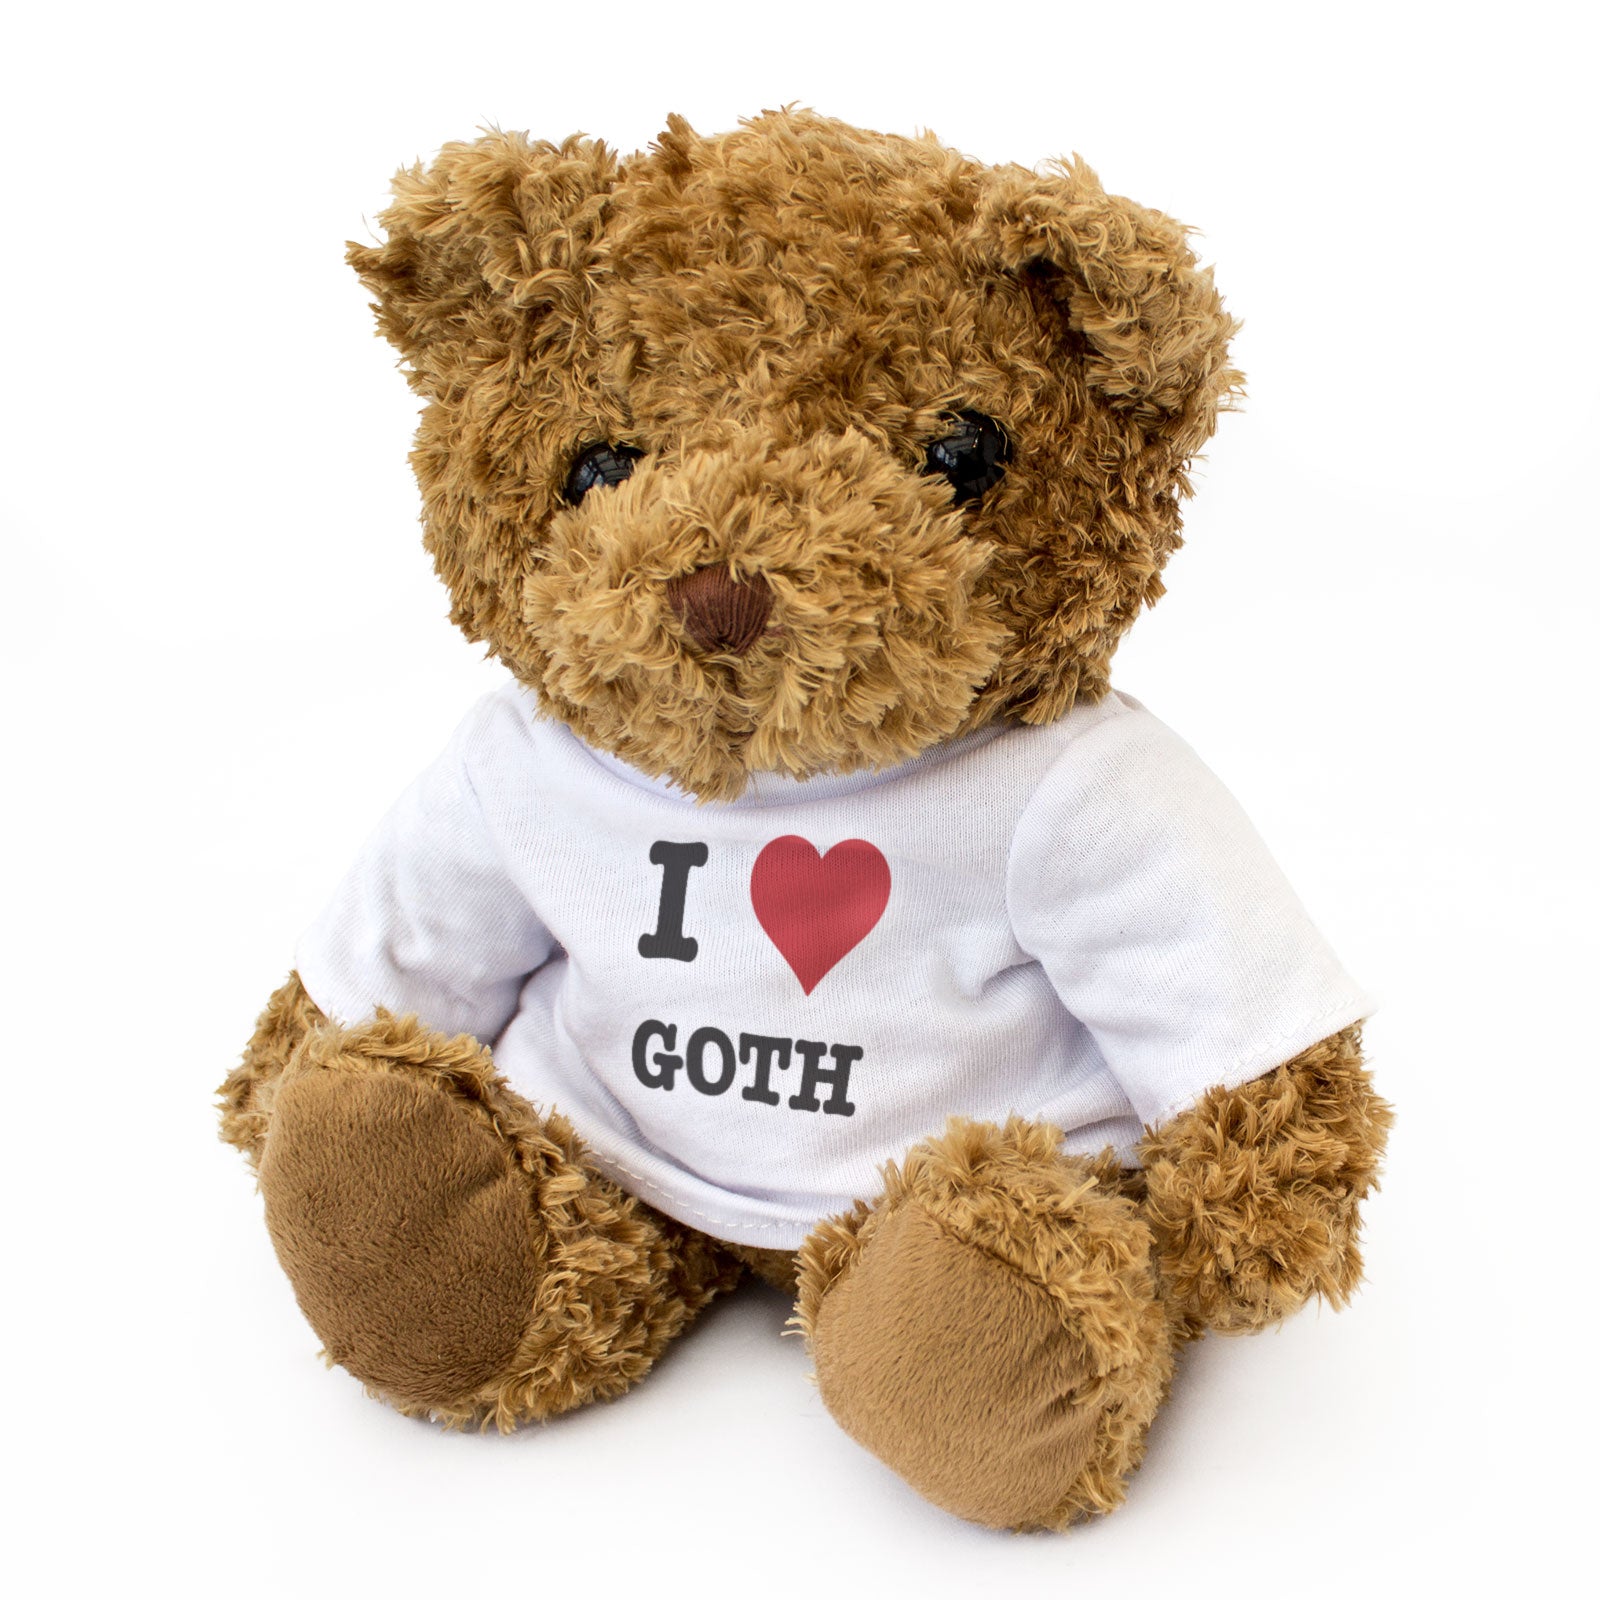 I Love Goth - Teddy Bear